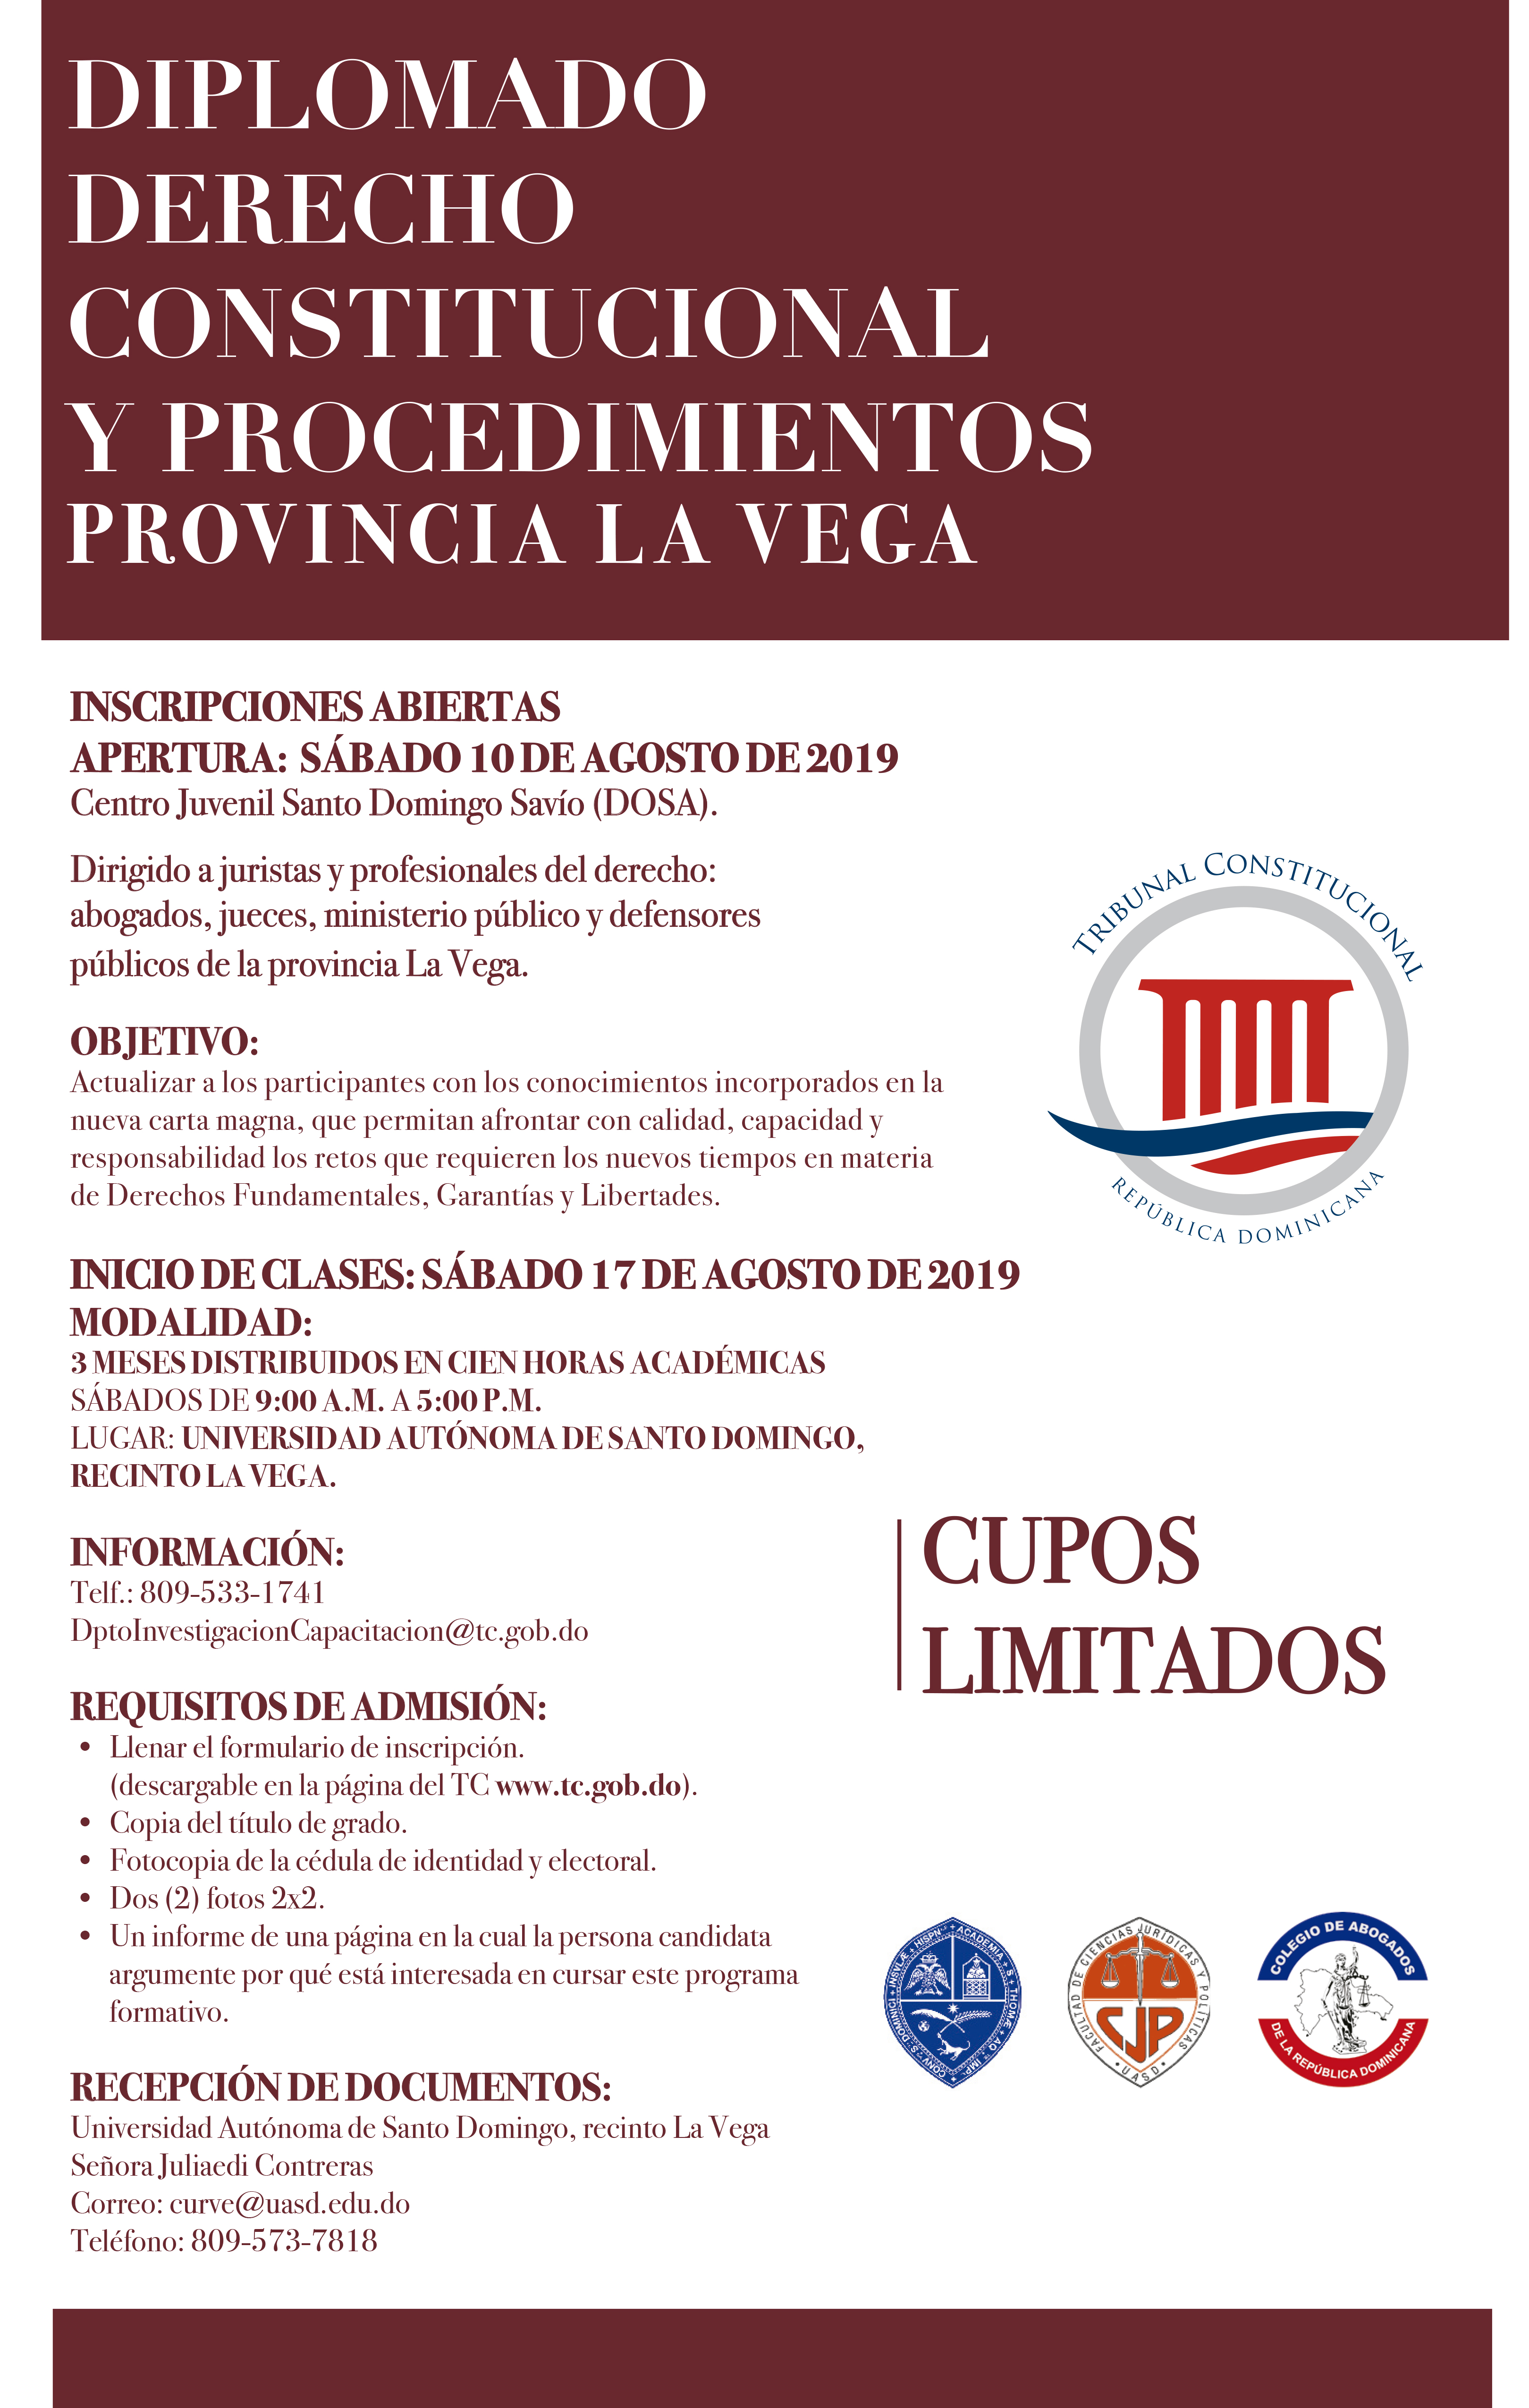 Imagen de Diplomado Derecho Constitucional y Procedimientos  en La Vega